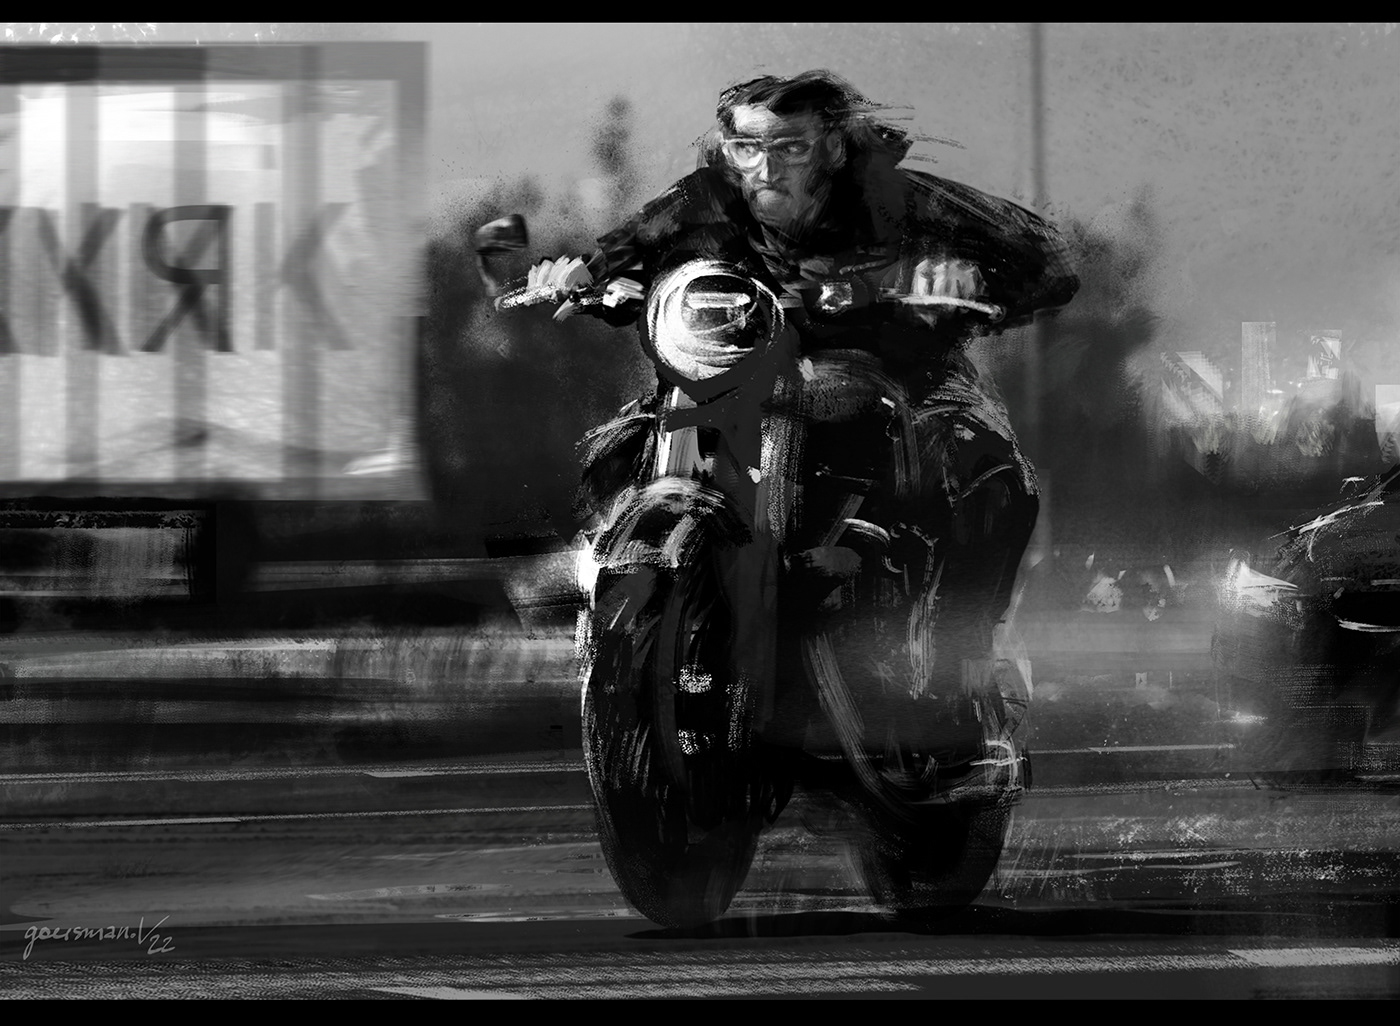 Bike escape Fly motorbike motorcycle racer